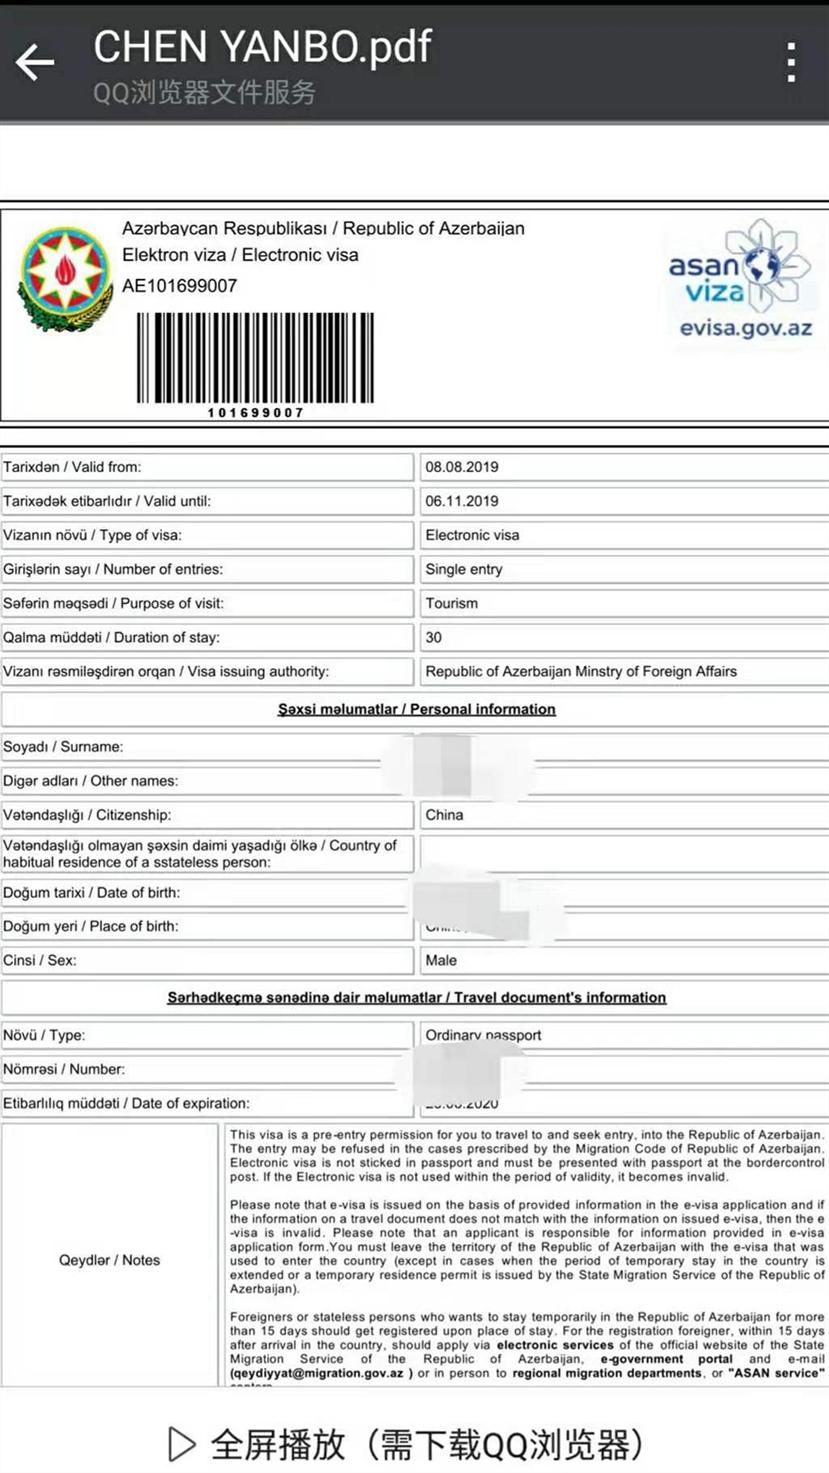 格鲁吉亚 阿塞拜疆旅游签证 出入境须知 注意事项 旅游电子签